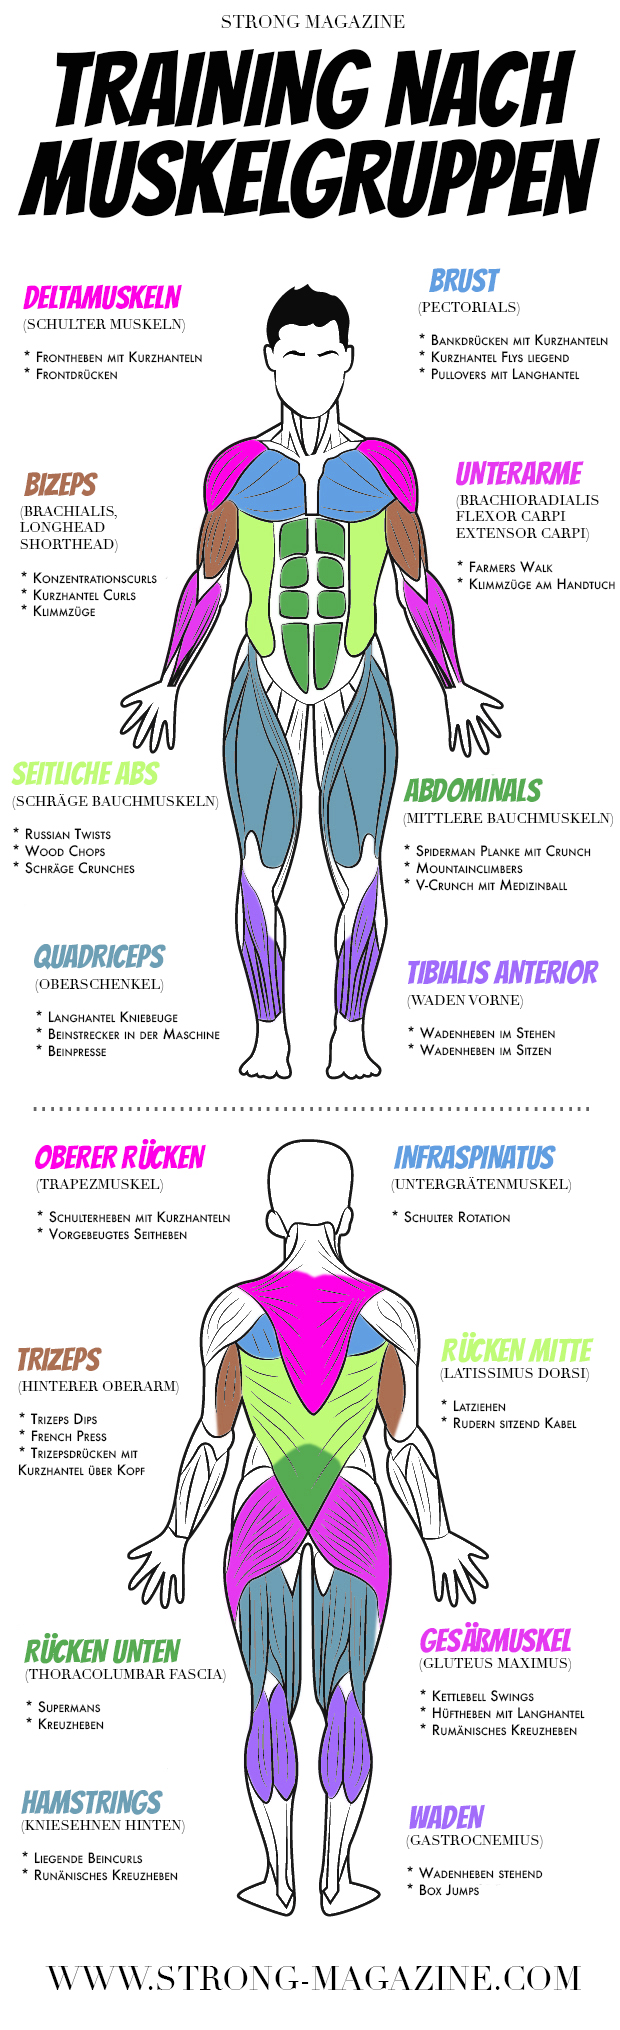 Training nach Muskelgruppen - Infografik mit Fitness Übungen für alle Muskeln